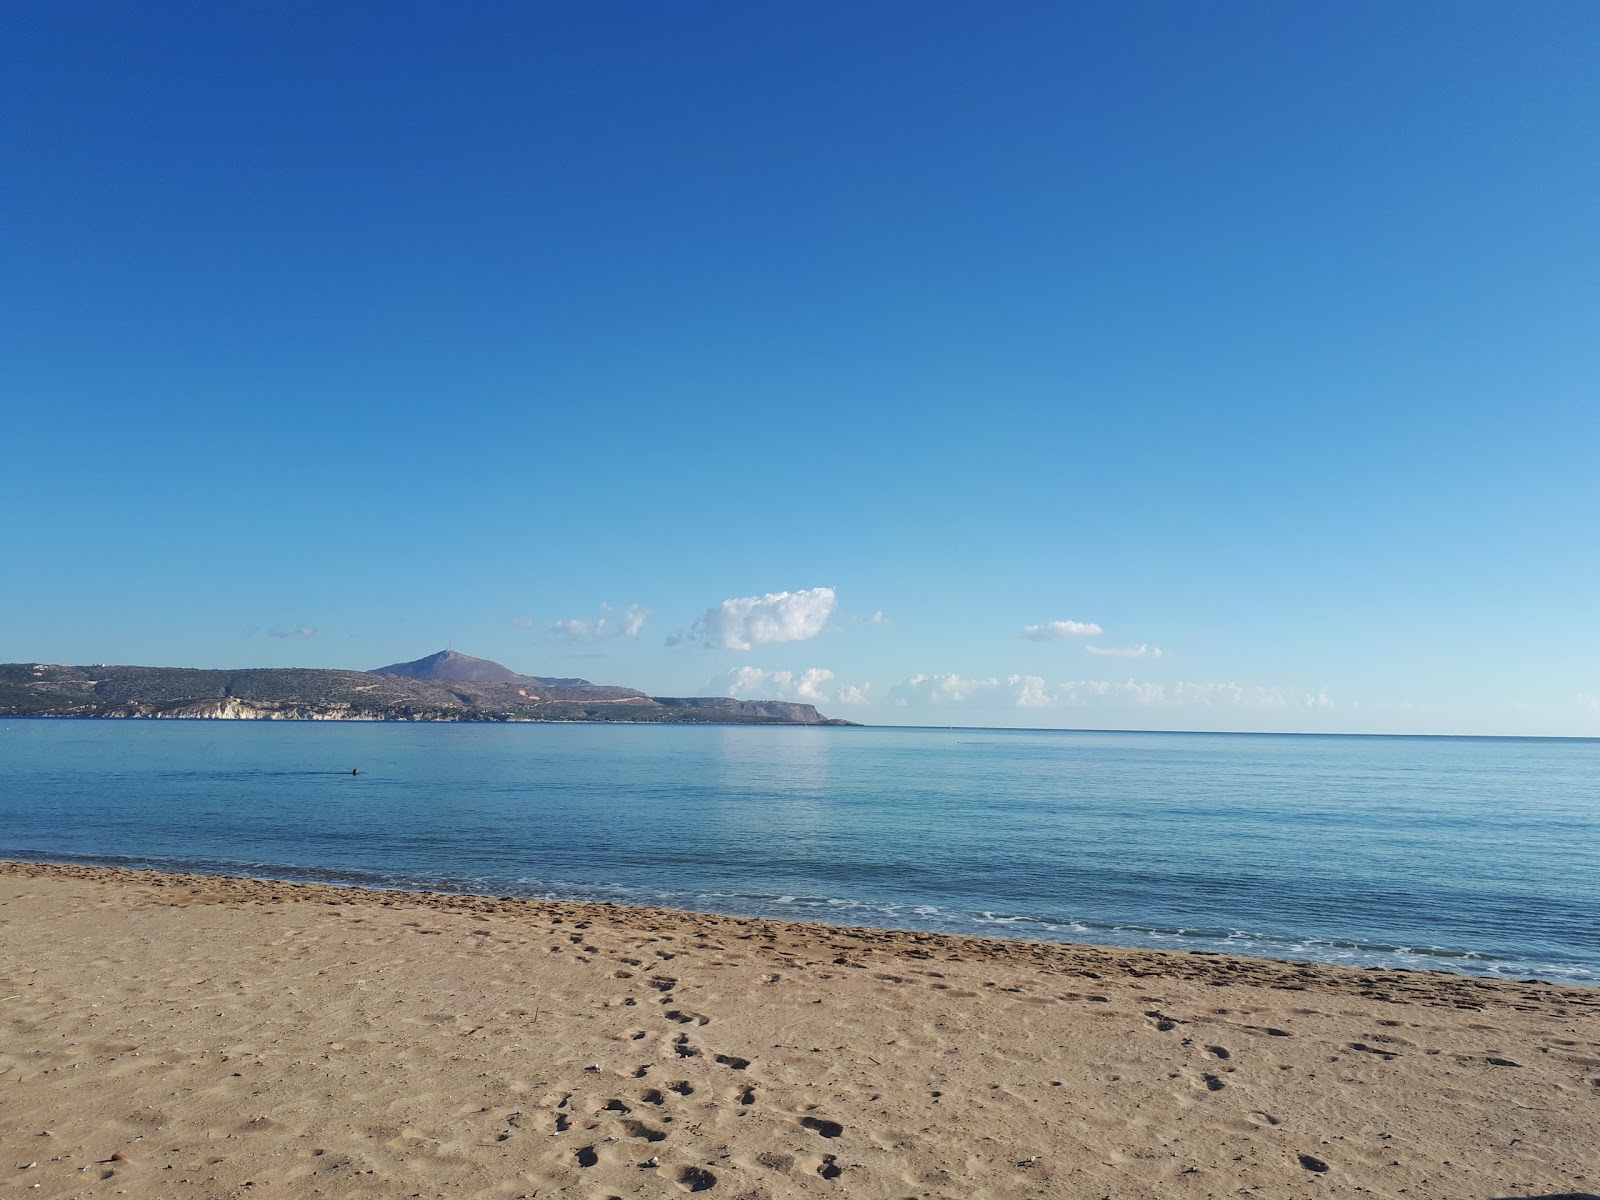 Photo de Kolatsos beach - endroit populaire parmi les connaisseurs de la détente